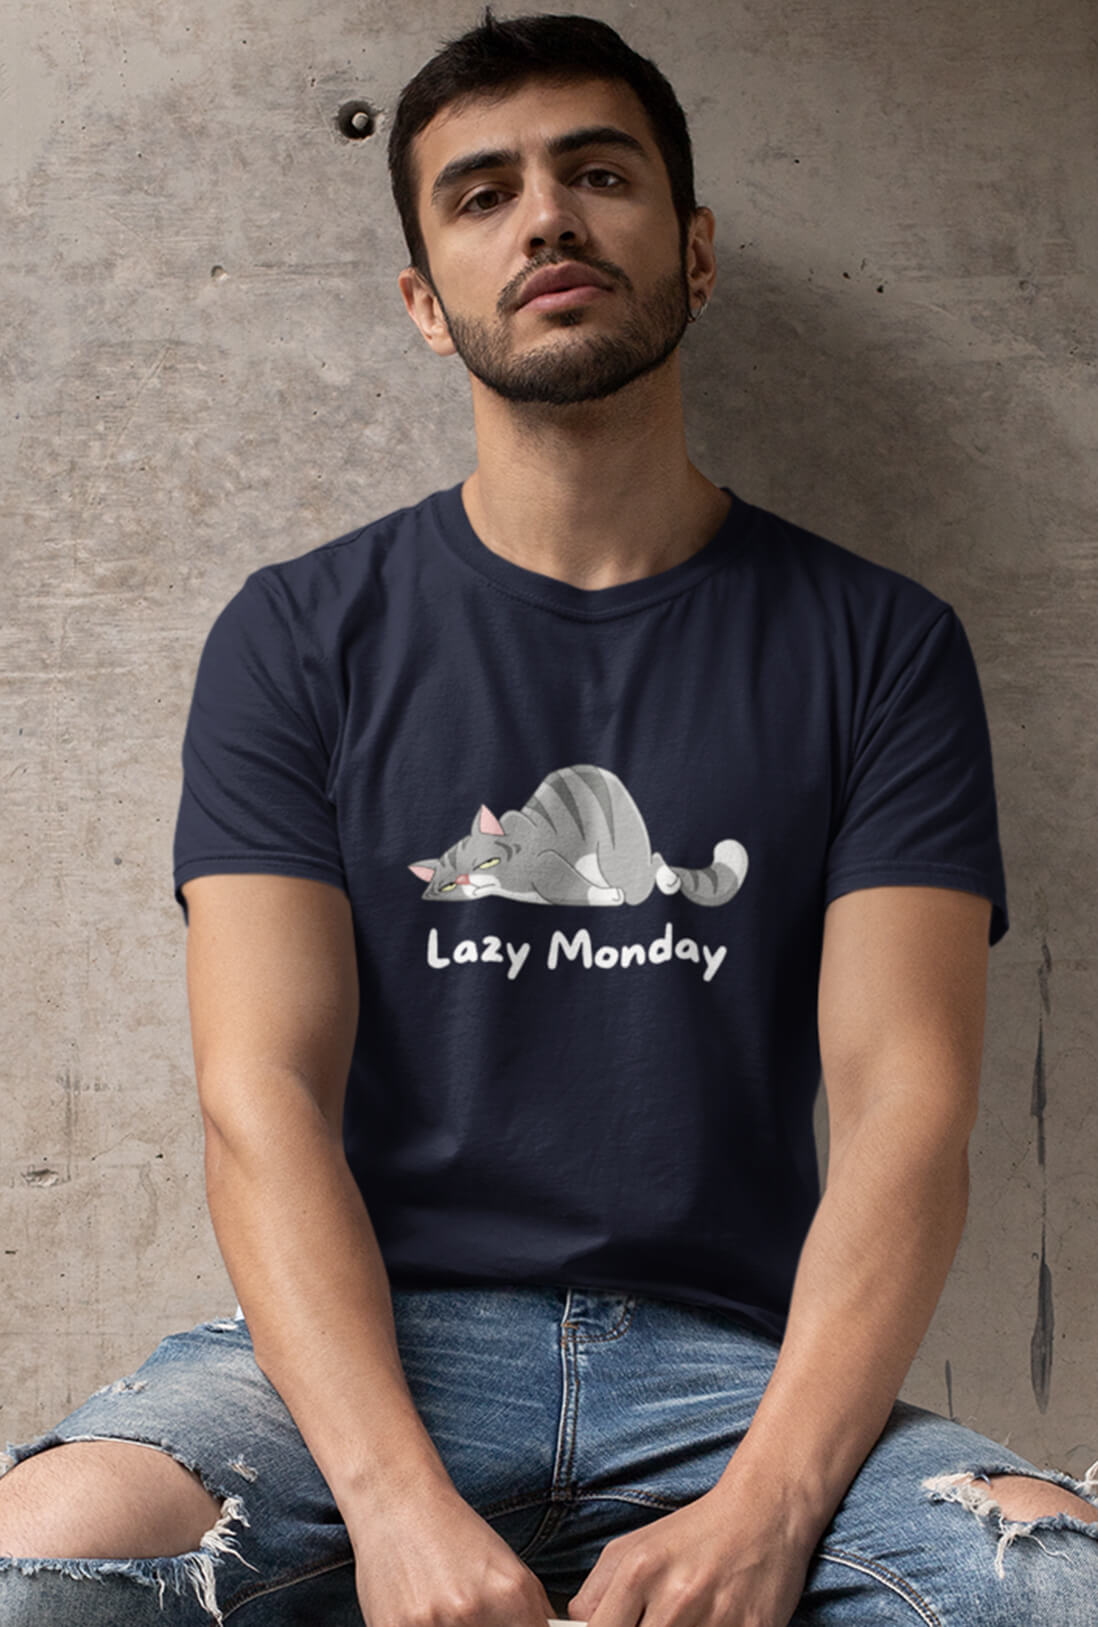 Lazy Monday Men's Cotton T-Shirt